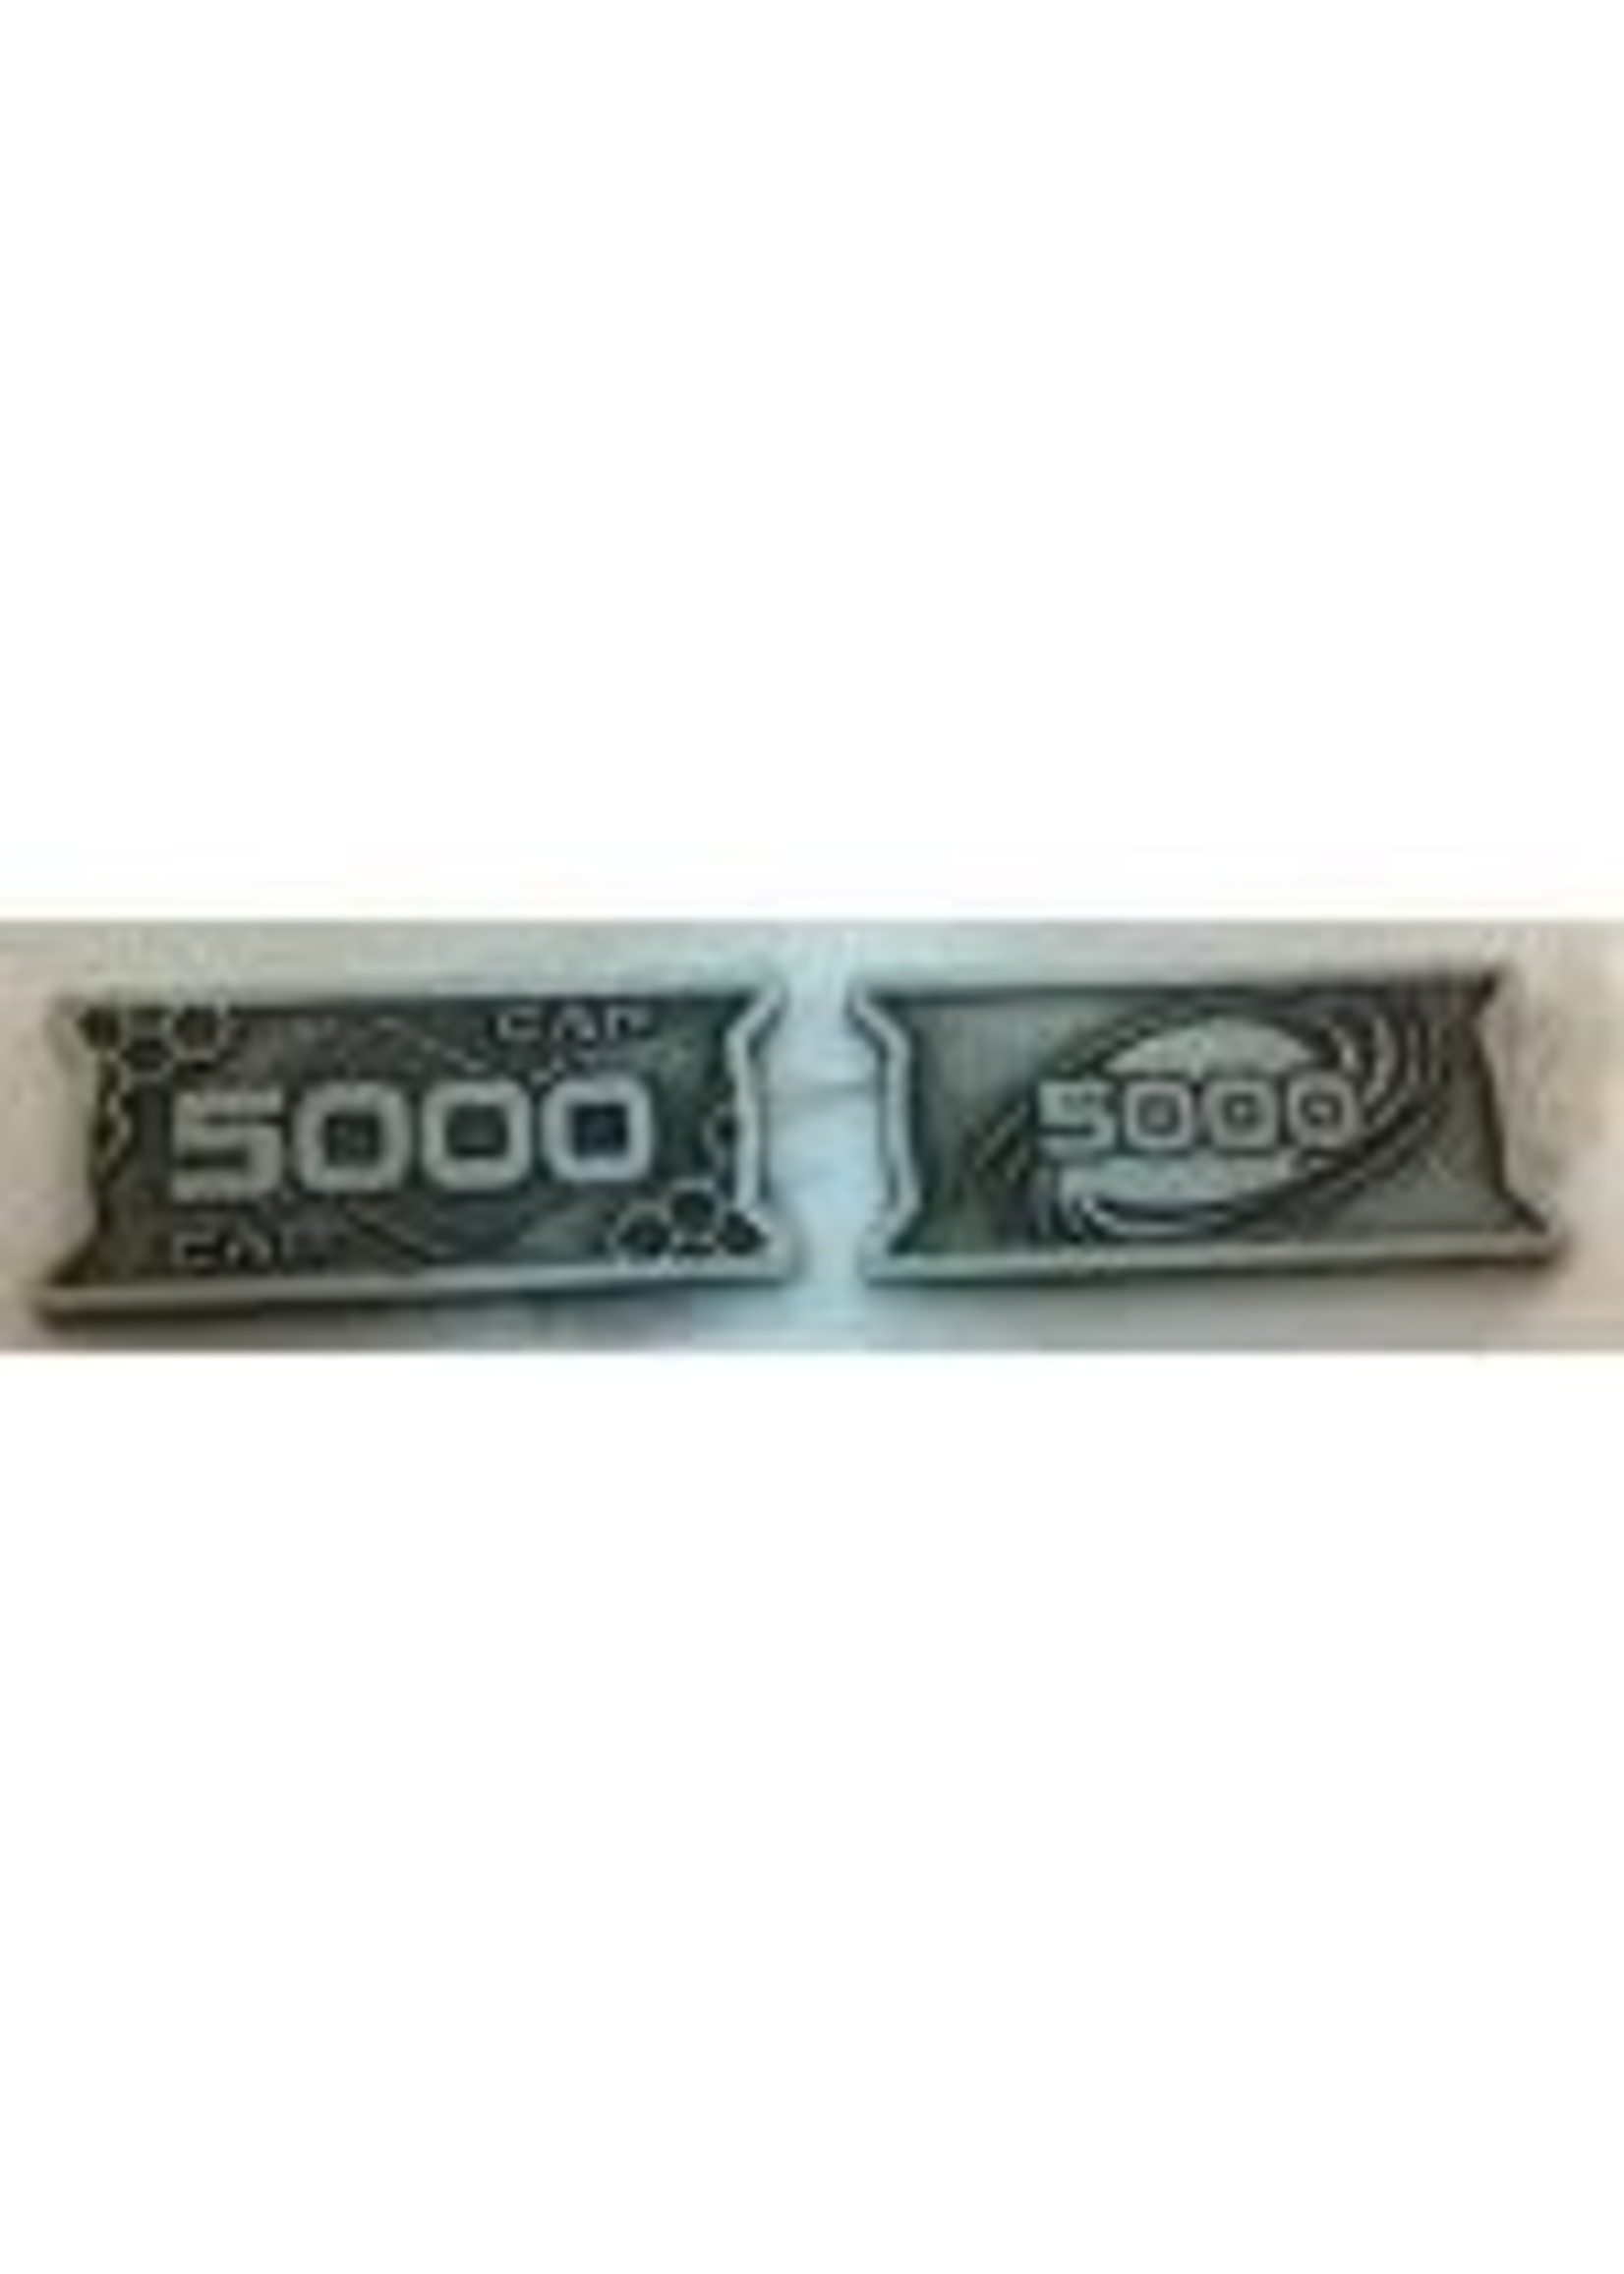 Minion Games Futuristic Metal Coins by Minion Games - 5000 CAP (10x)